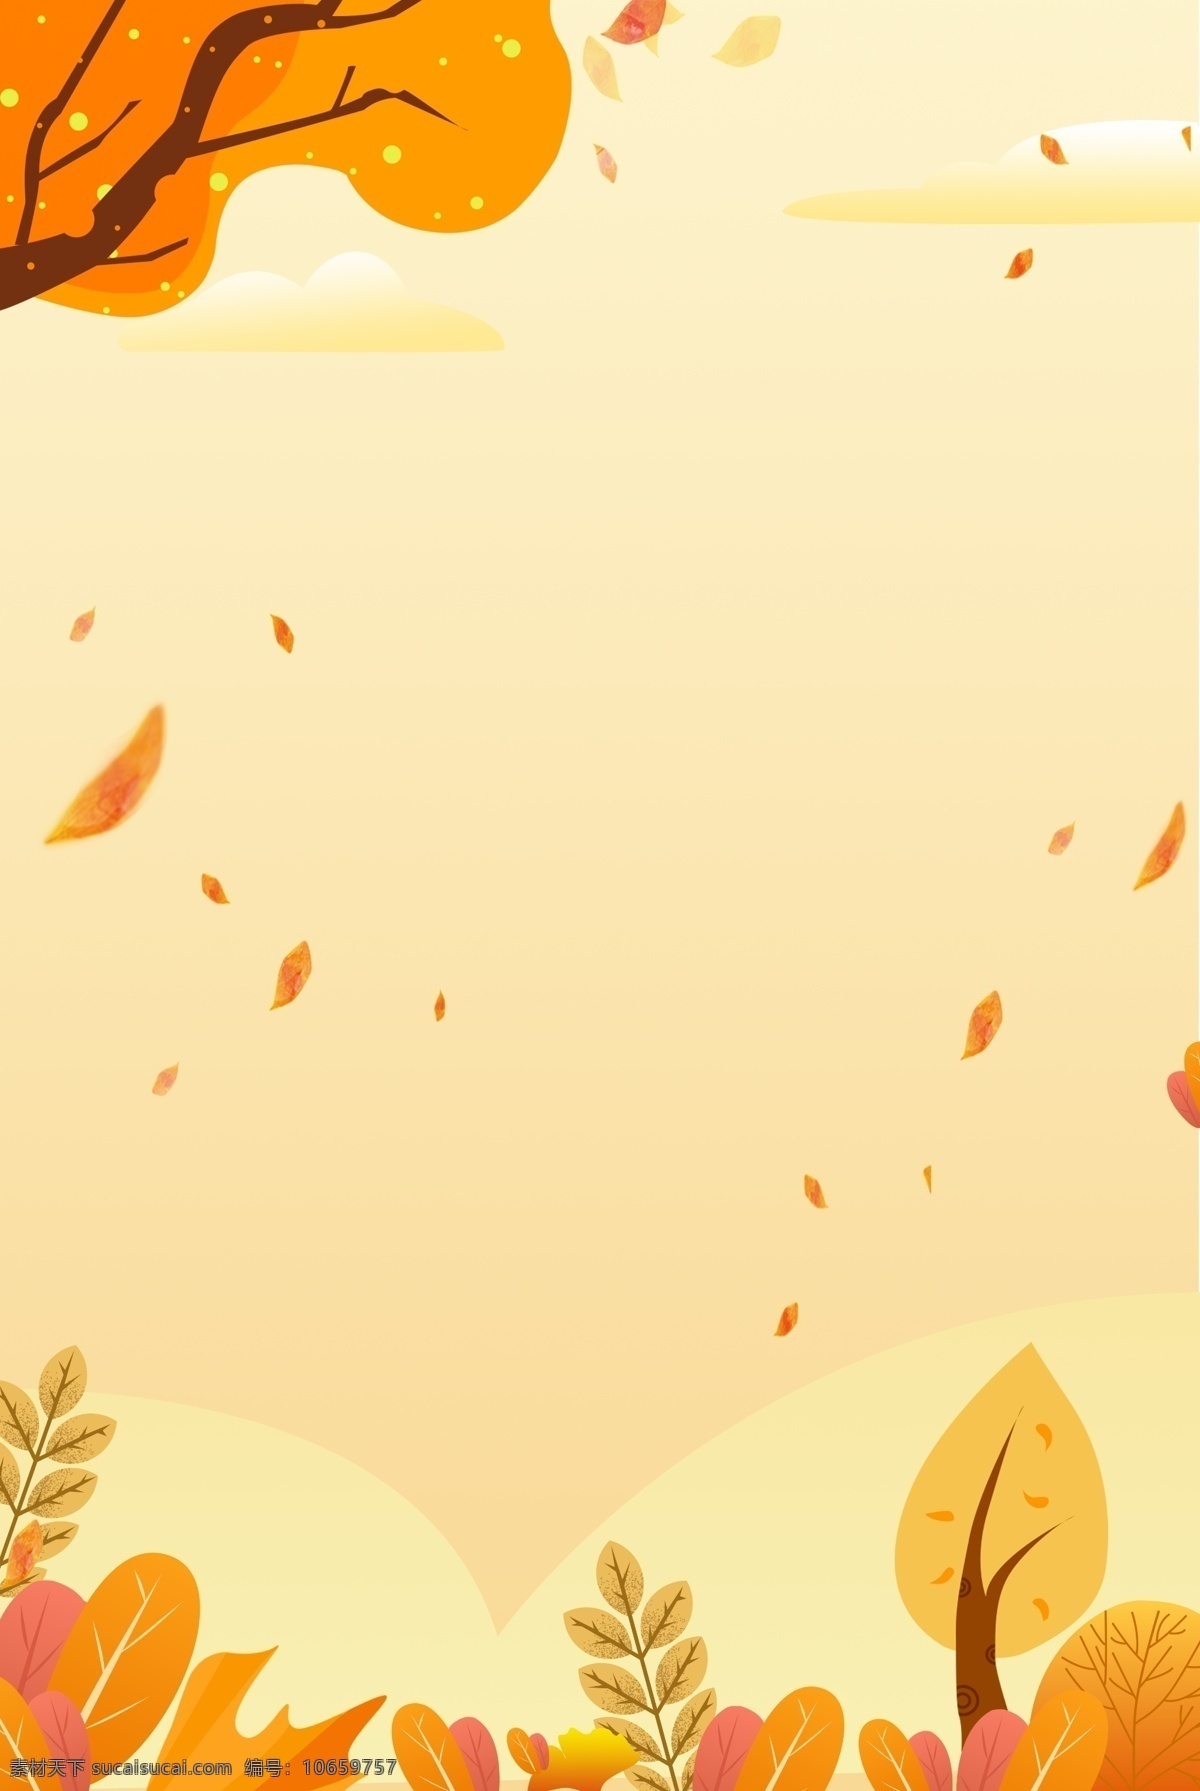 清新 简约 秋天 手绘 背景 水彩 二十四气节气 枫叶 装饰画